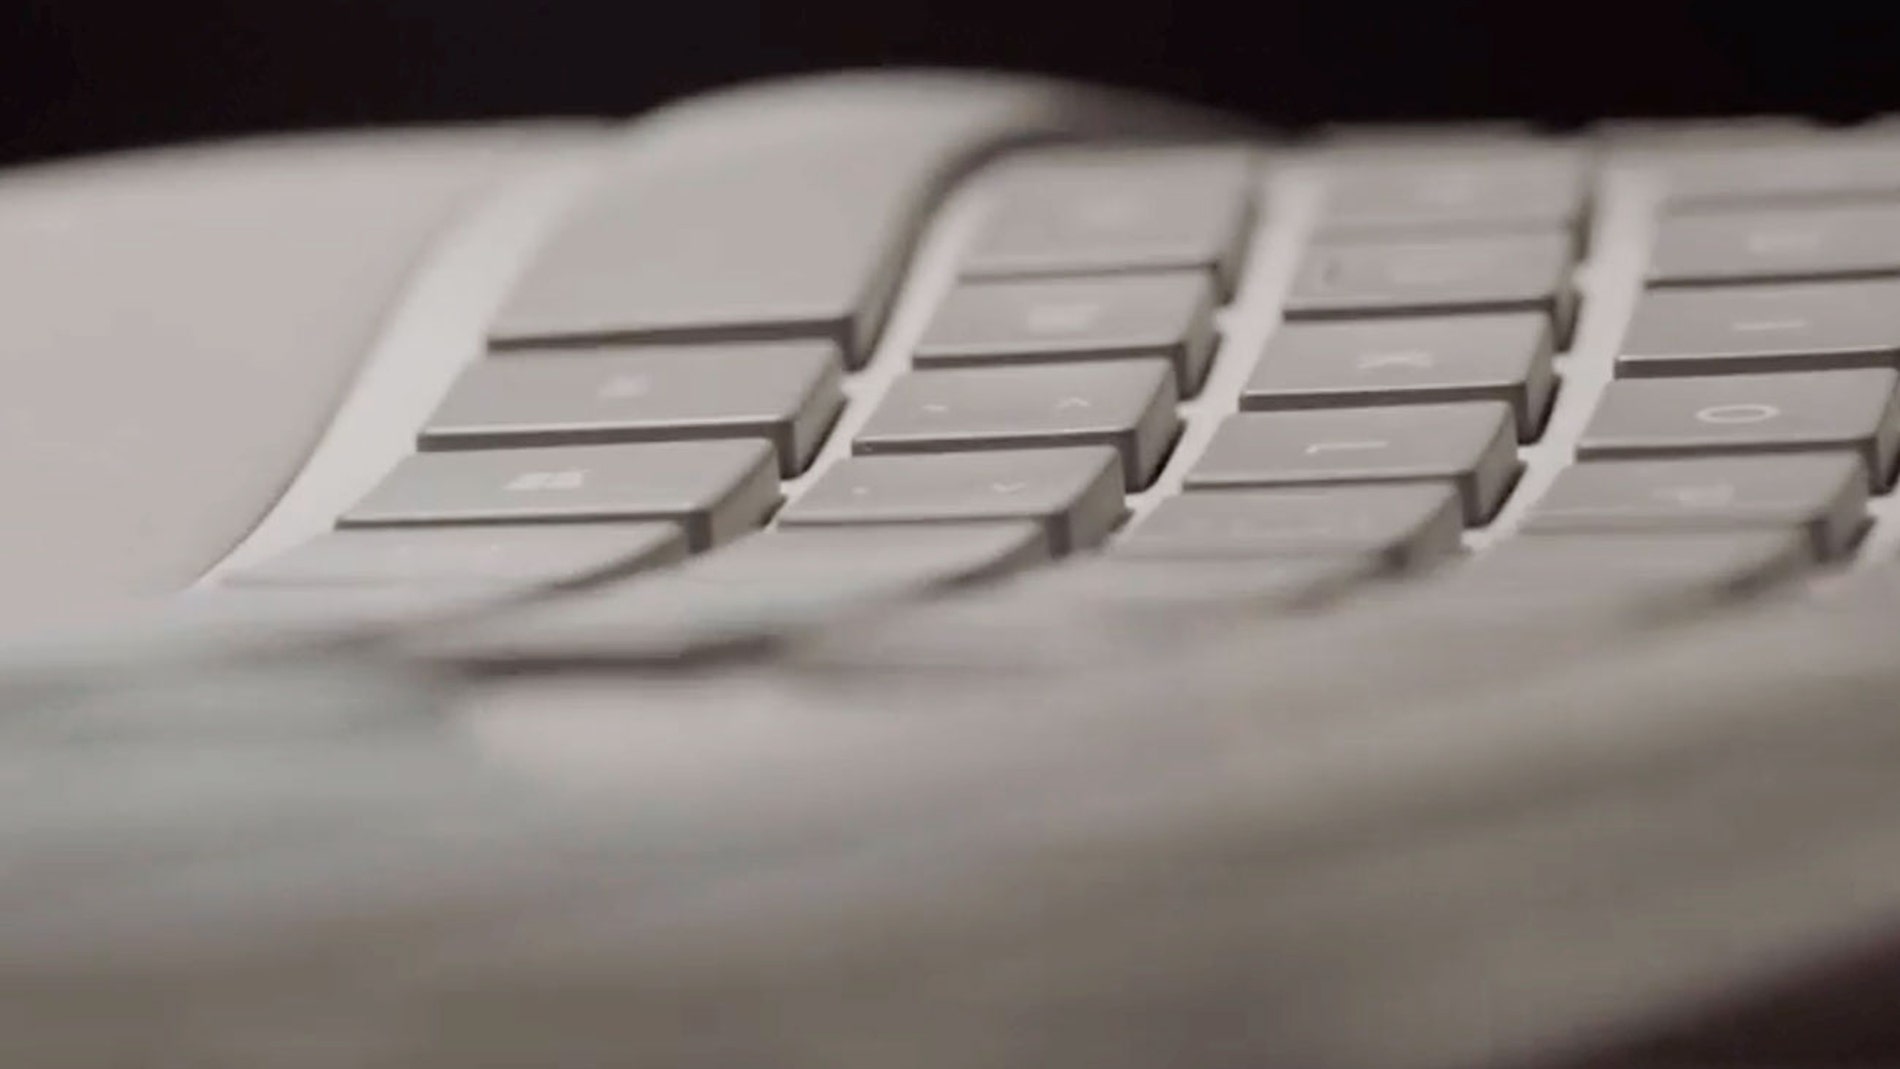 Microsoft planea lanzar de nuevo su mítico teclado ergonómico